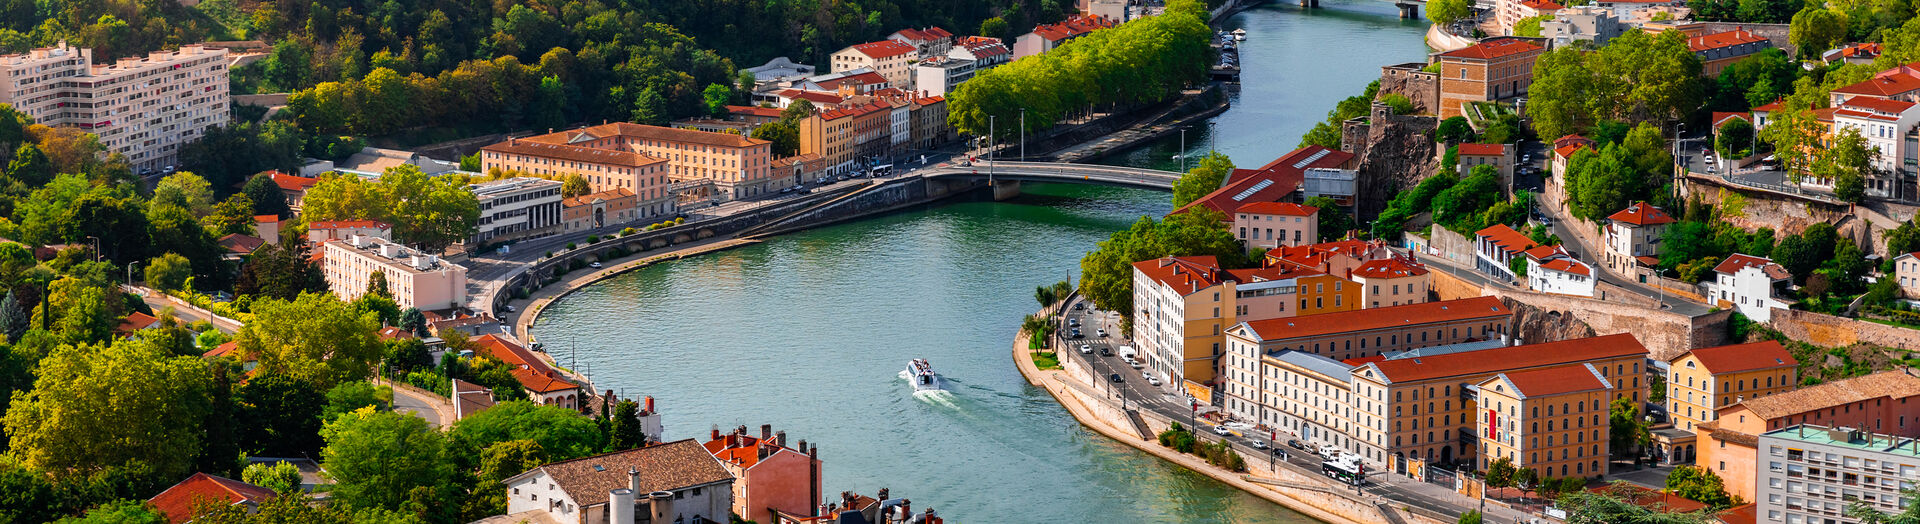 Saone River, Lyon